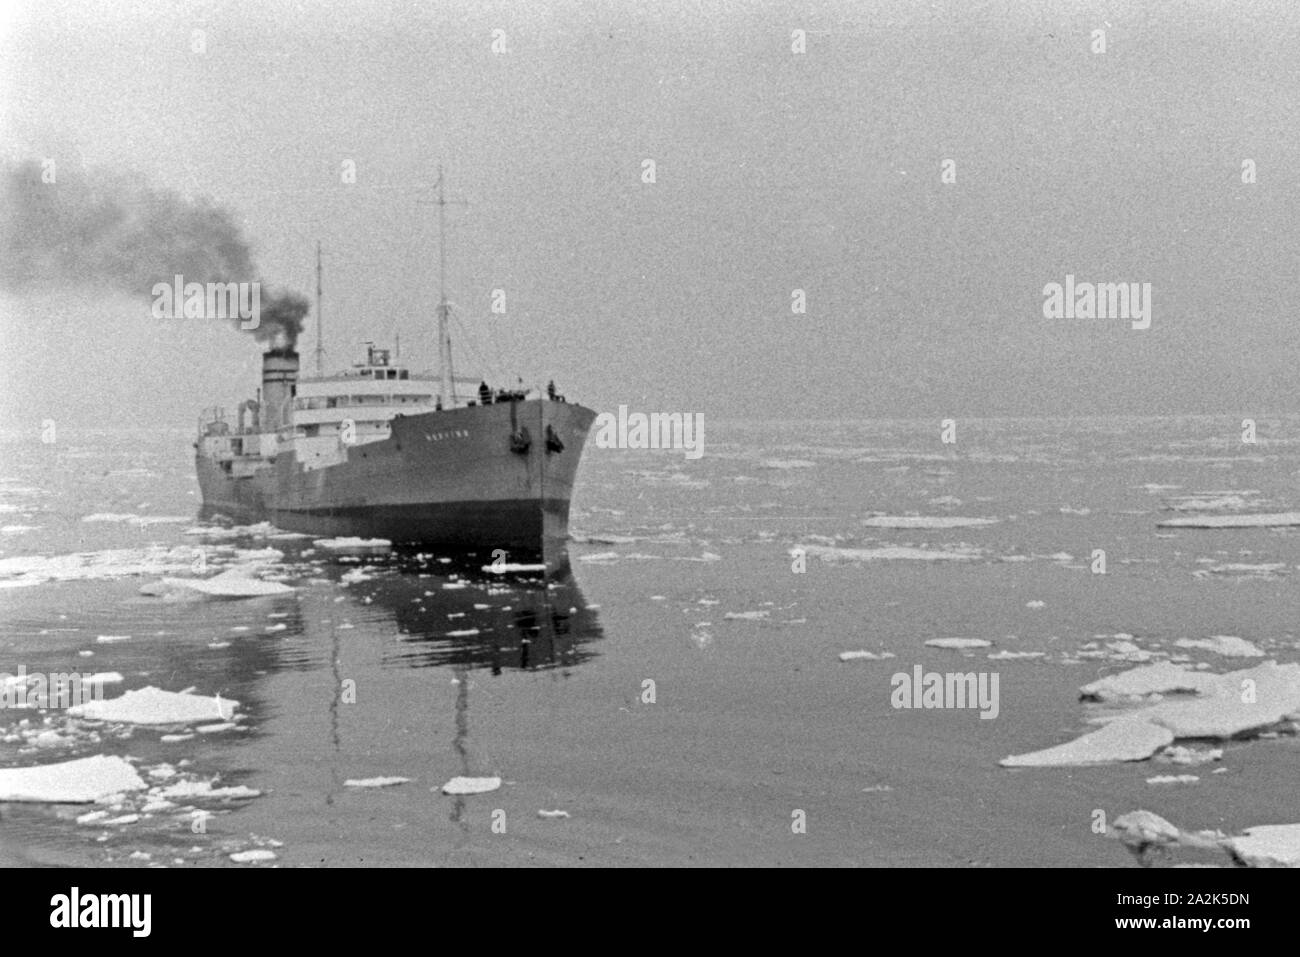 Ein Schiff der deutschen Walfangflotte im Eismeer in der Arktis, 1930er Jahre. A ship of the German whaling fleet in the Arctic Sea, 1930s. Stock Photo